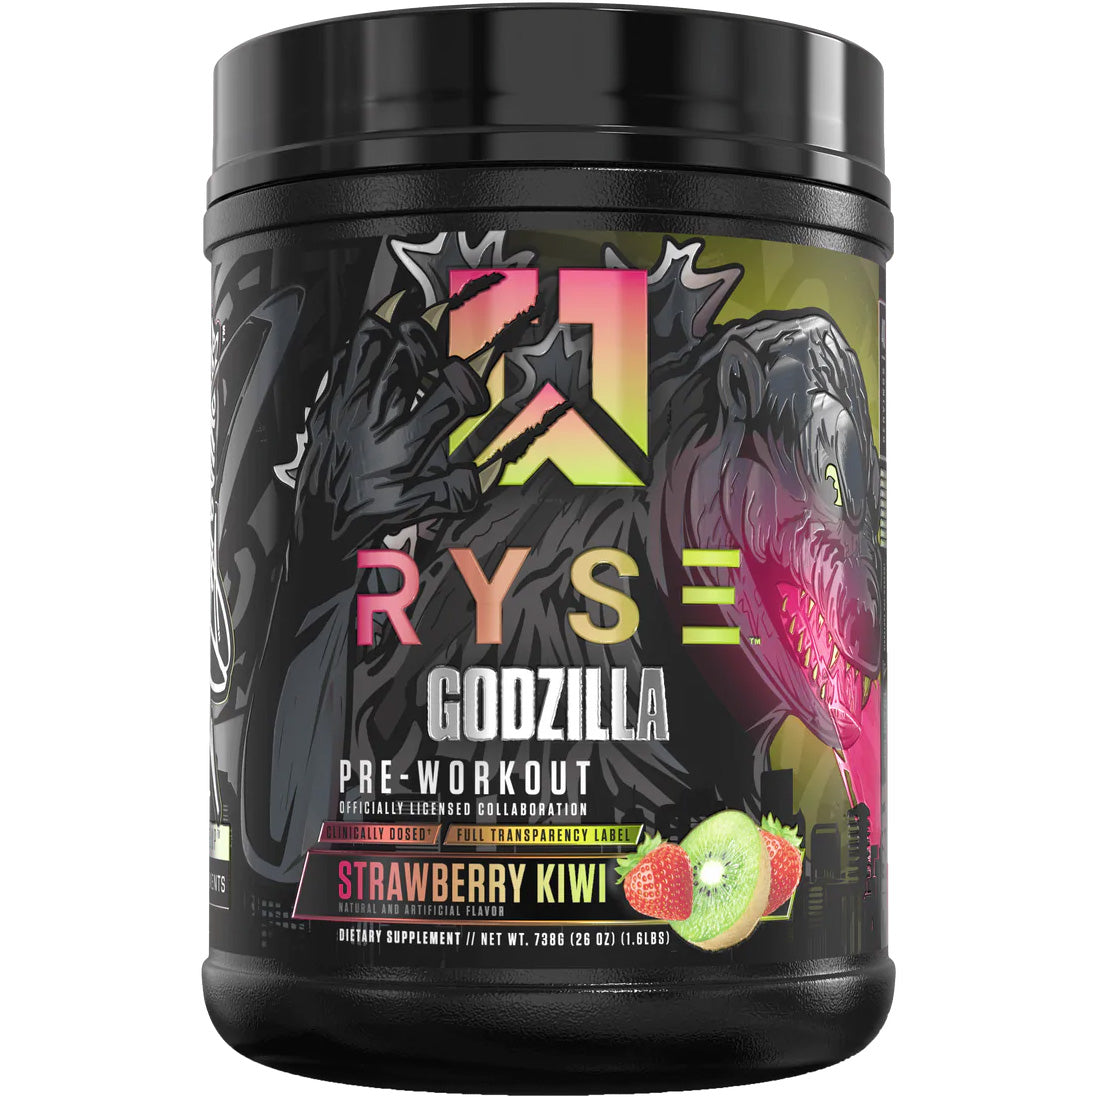 Ryse Godzilla Pre-Workout 40 Servings